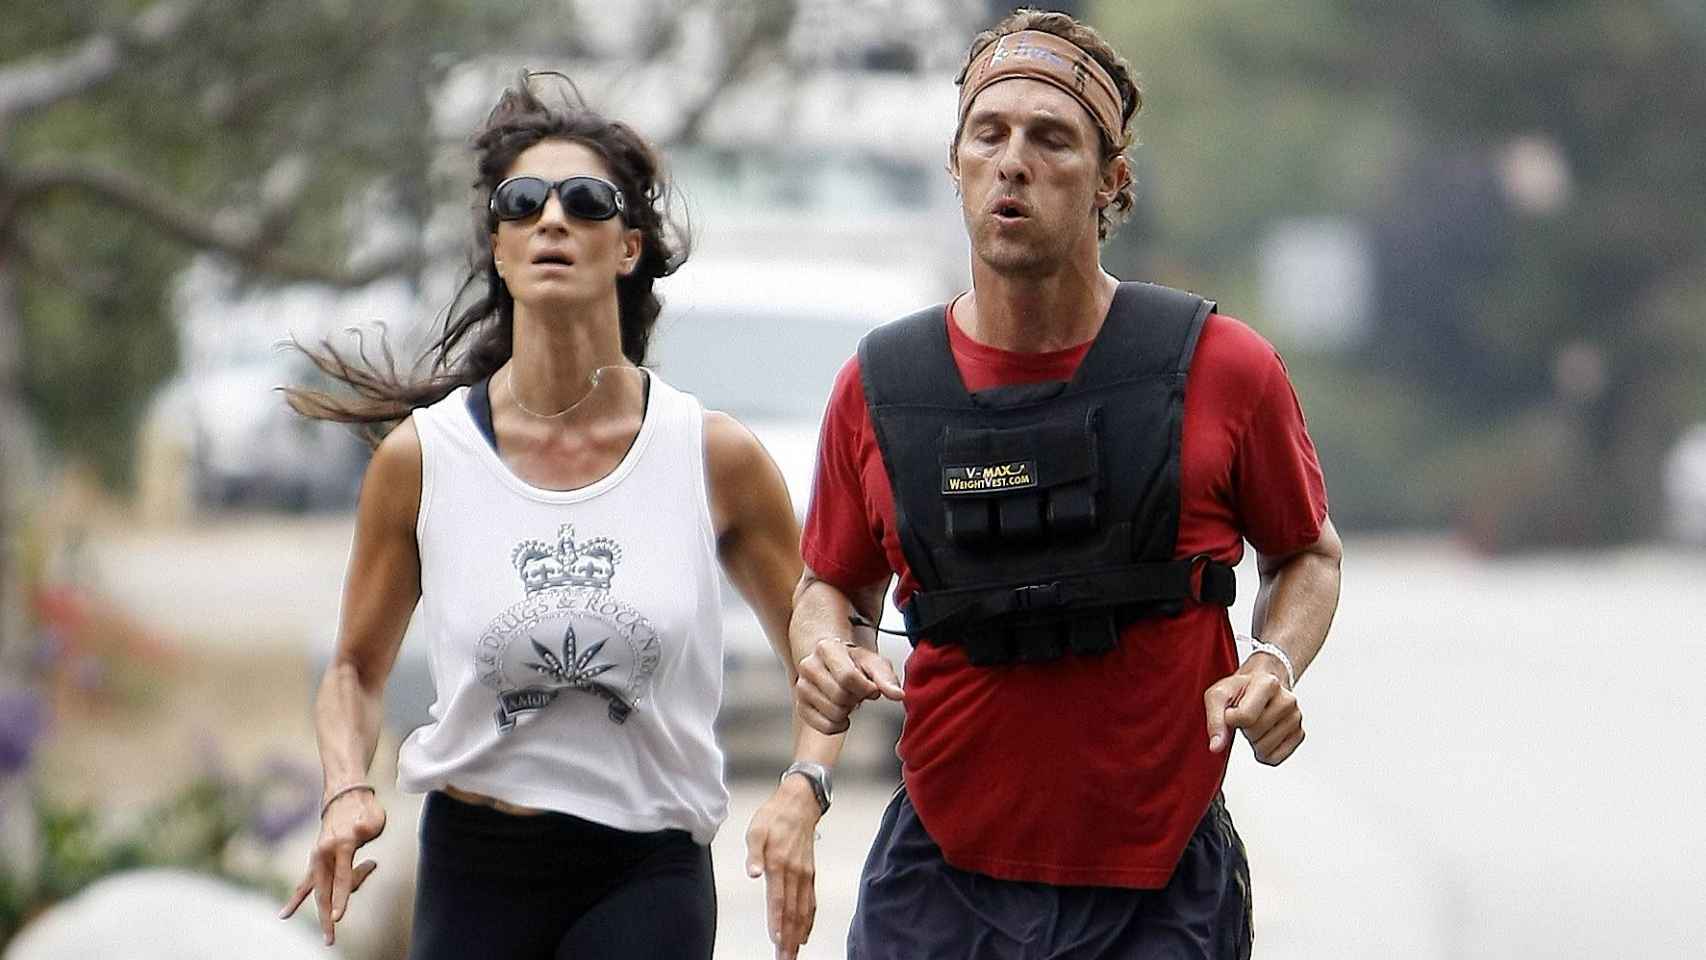 El actor Matthew McConaughey corre con su entrenadora personal y un chaleco de peso.